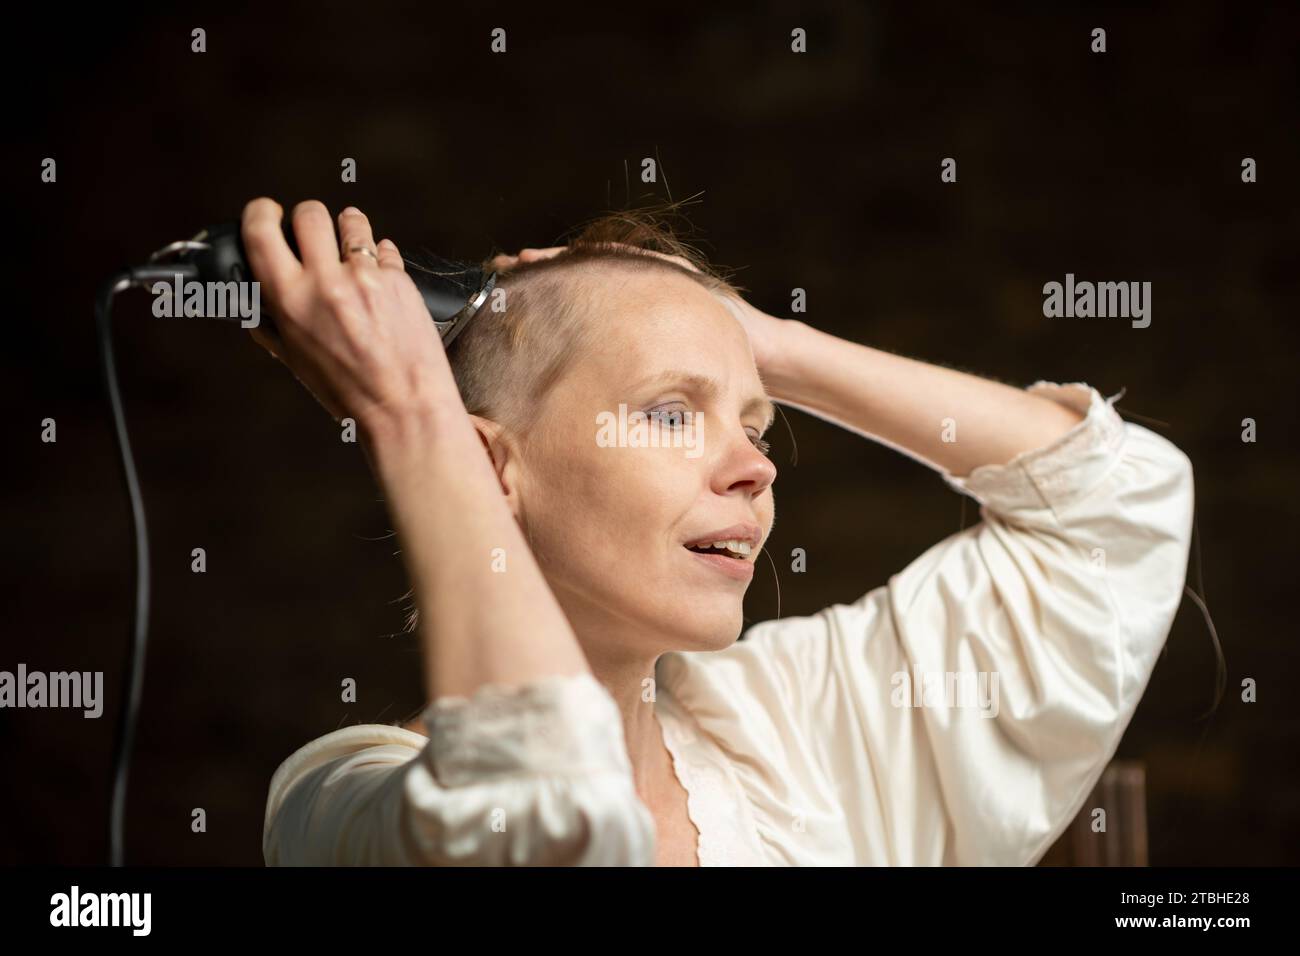 Eine Frau nimmt sich mit einem Haarschneider ihr Haar. Kahle Frau mittleren Alters in einem weißen Hemd auf dunklem Hintergrund. Stockfoto